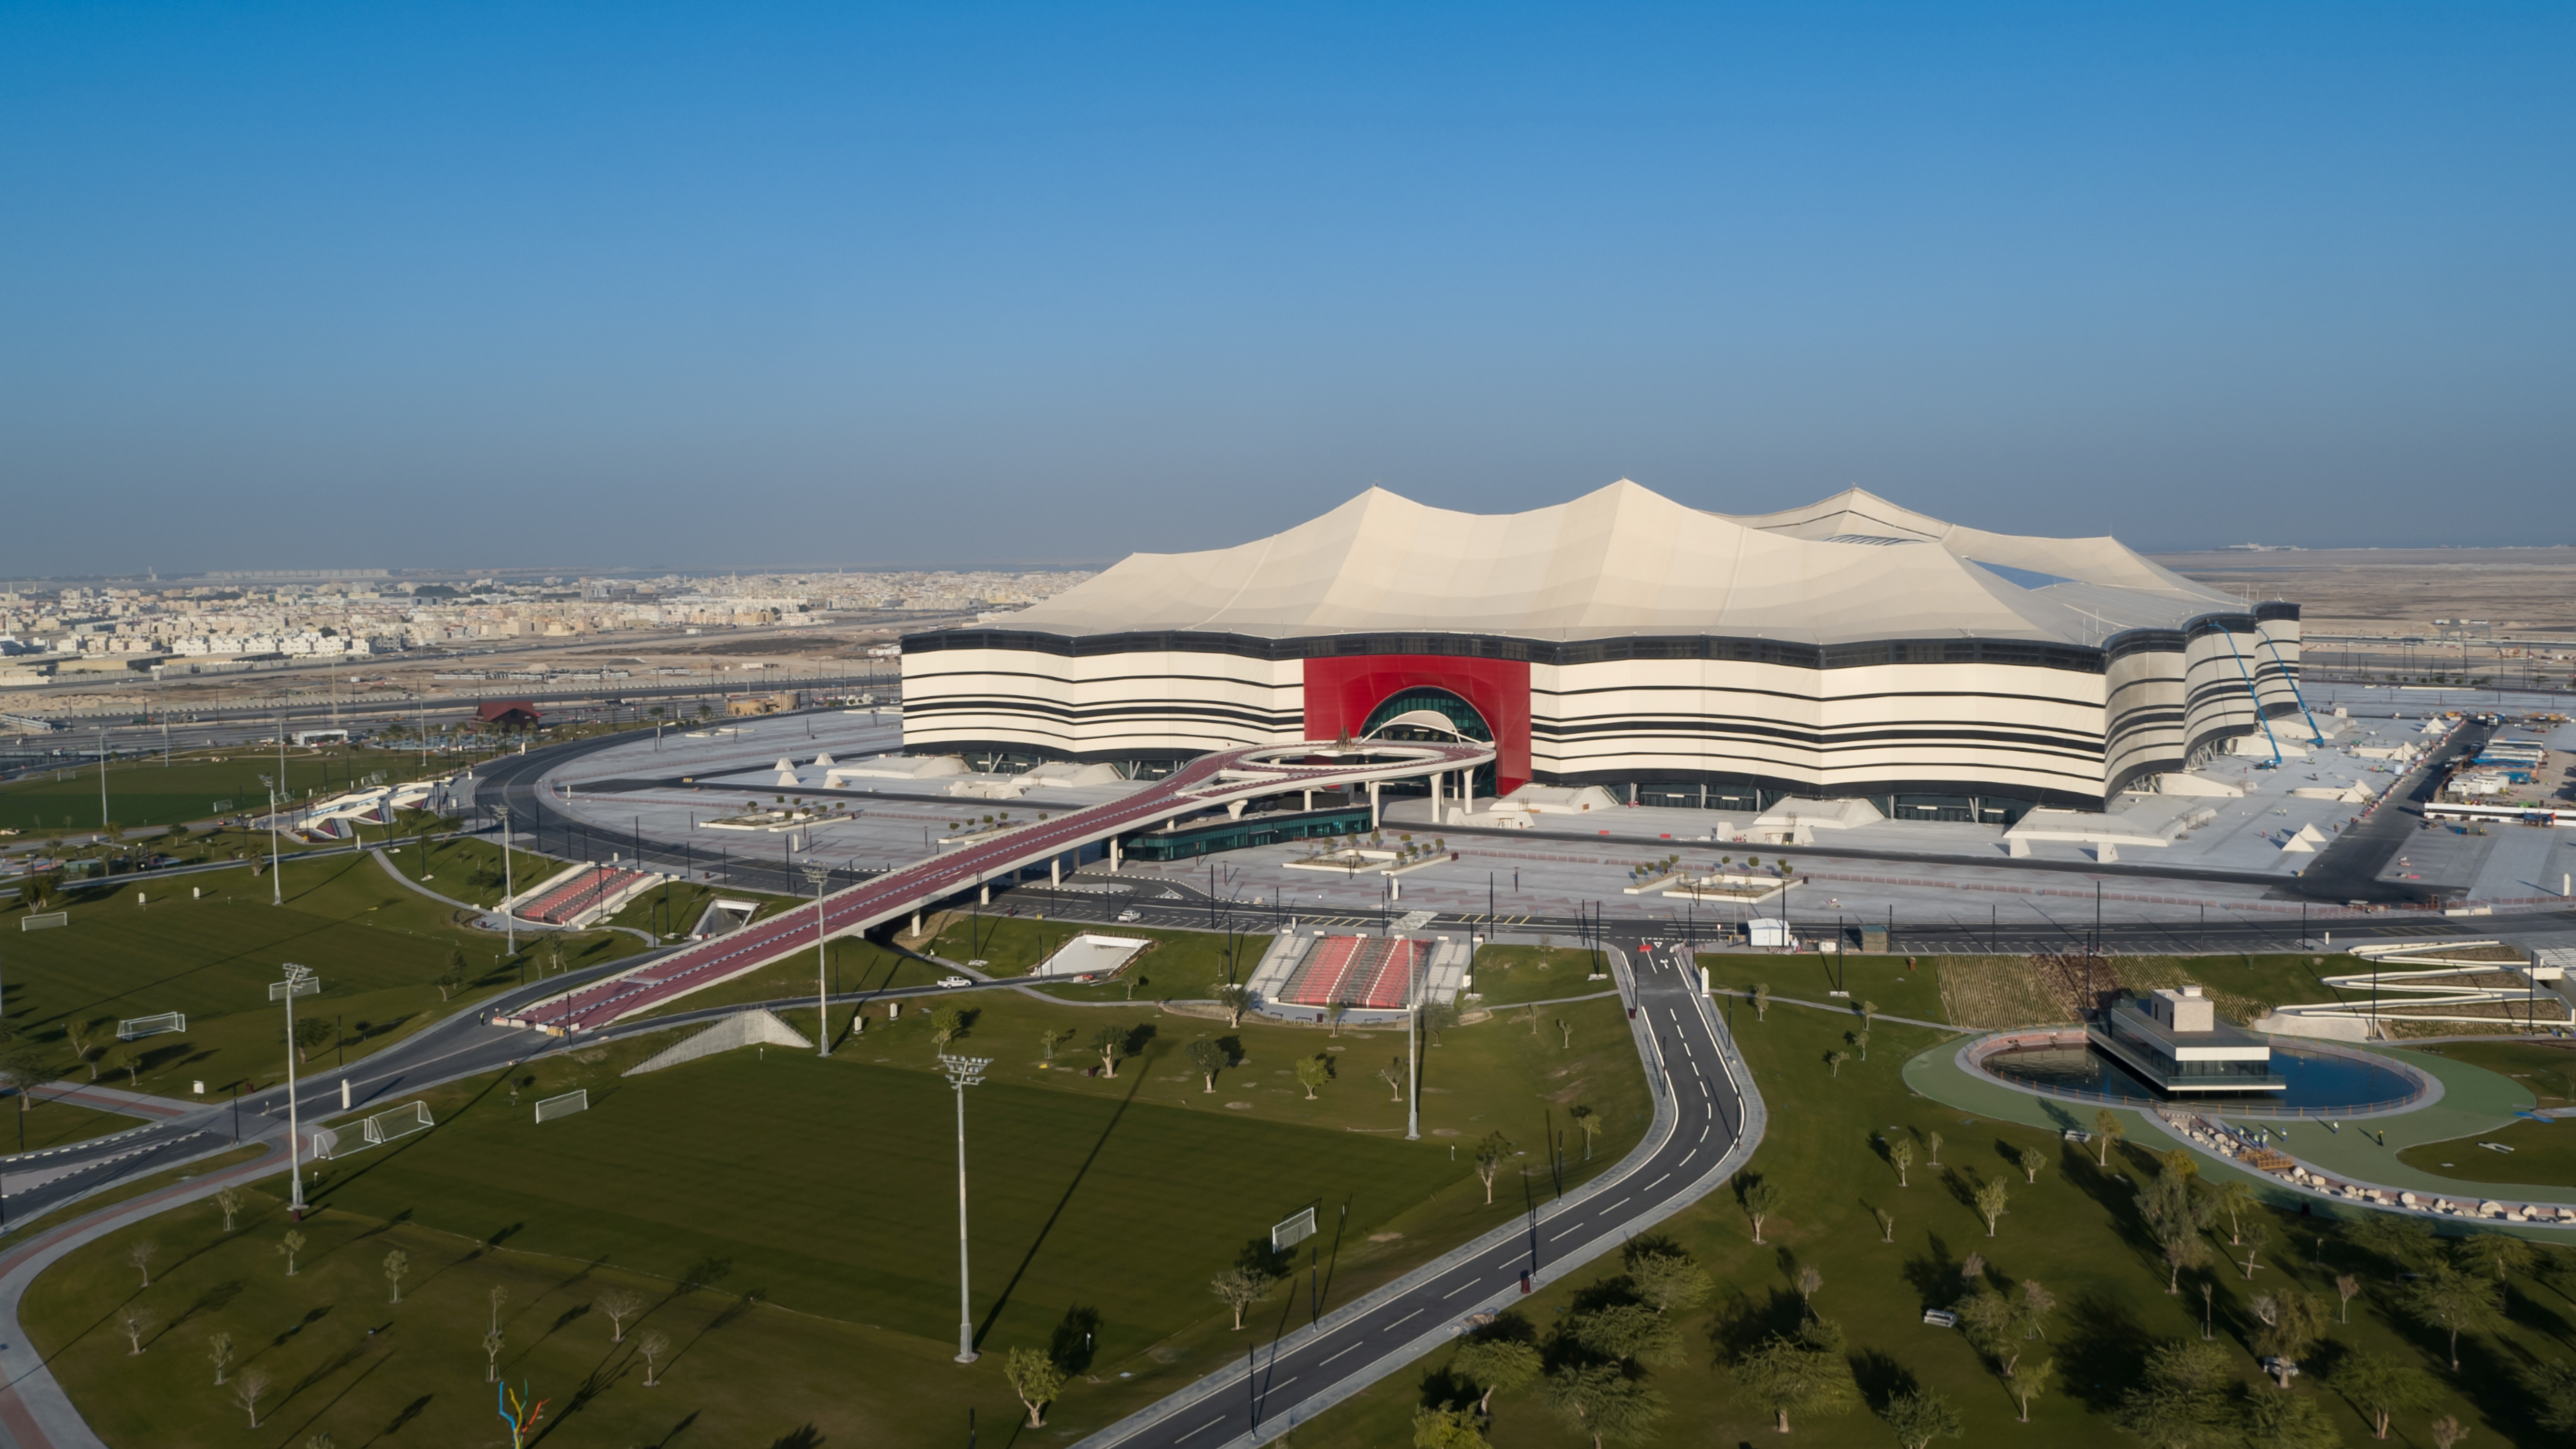 El diseño del Al Bayt Stadium está inspirado en una carpa árabe (Foto: REUTERS)